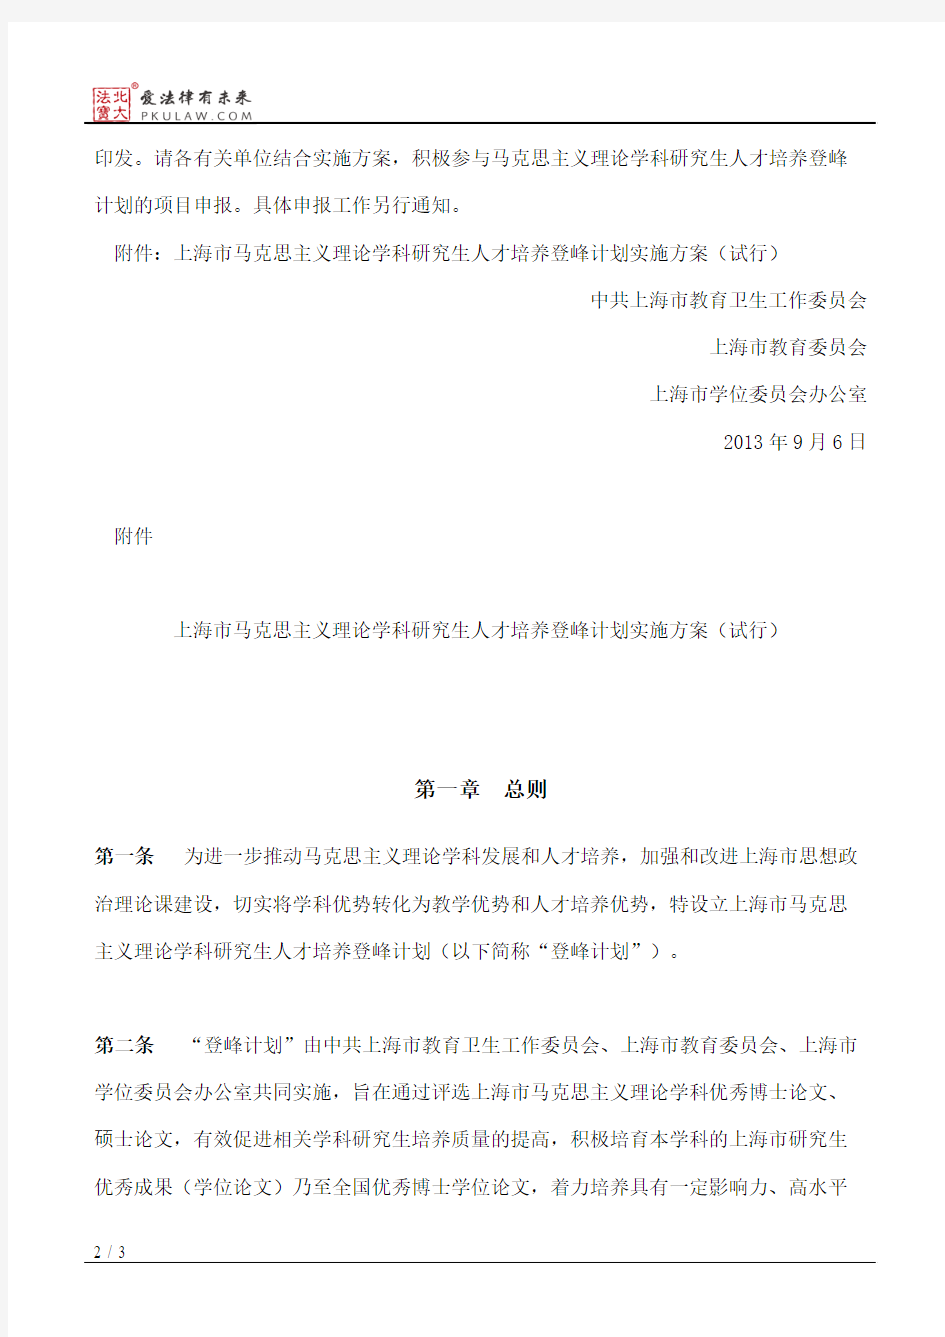 中共上海市教育卫生工作委员会、上海市教育委员会、上海市学位委